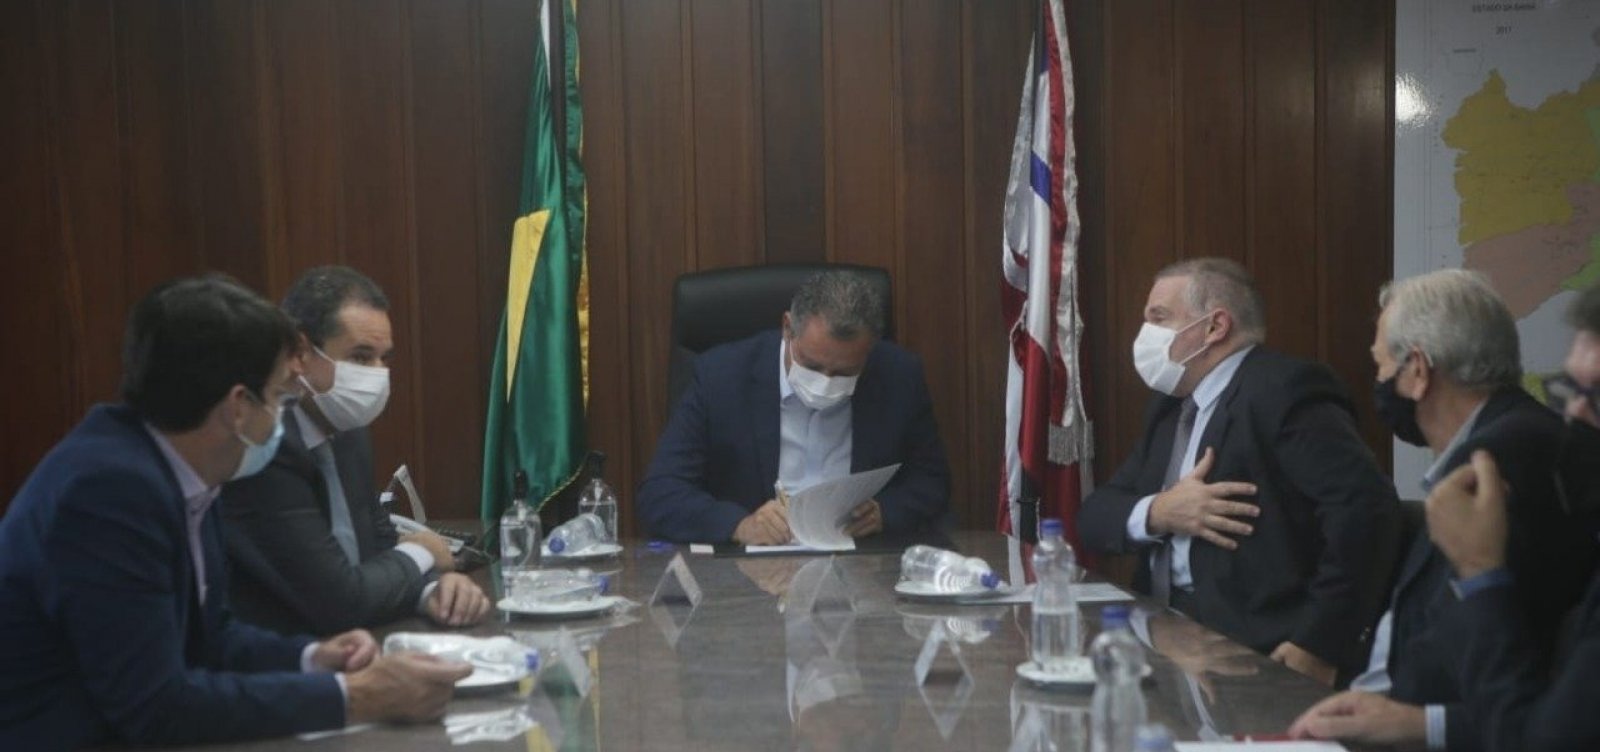 Governo assina protocolo de intenções com Proquigel para implantação de fábrica de Amônia verde na Bahia